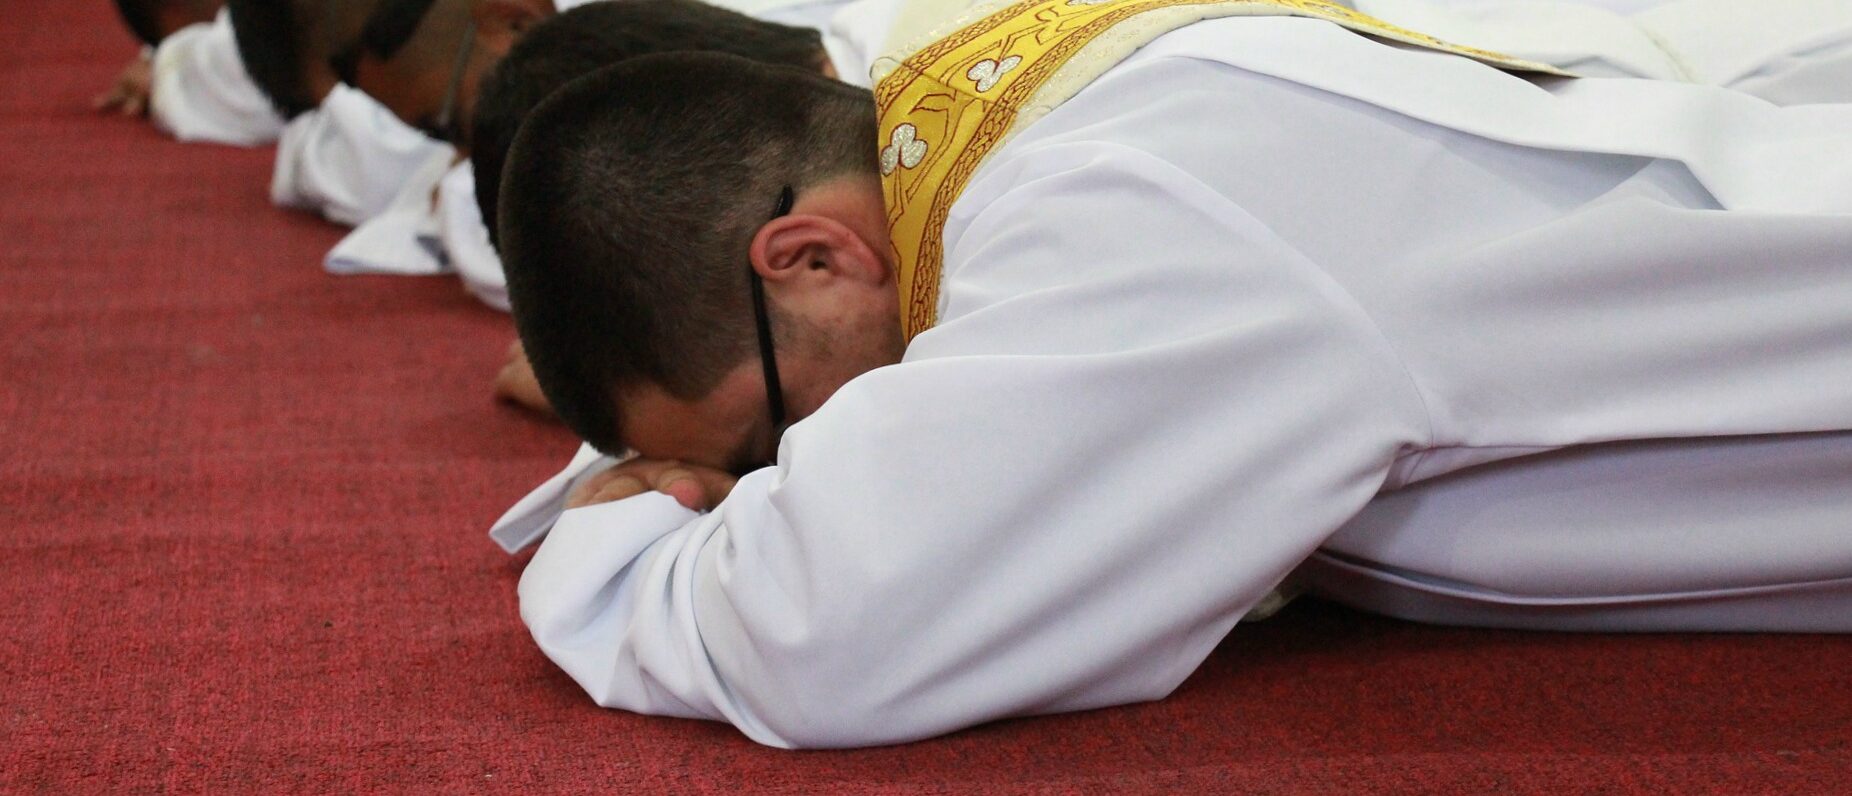 Pour le pape François, les jeunes prêtres doivent être du peuple et pour le peuple | Photo: Pixabay.com